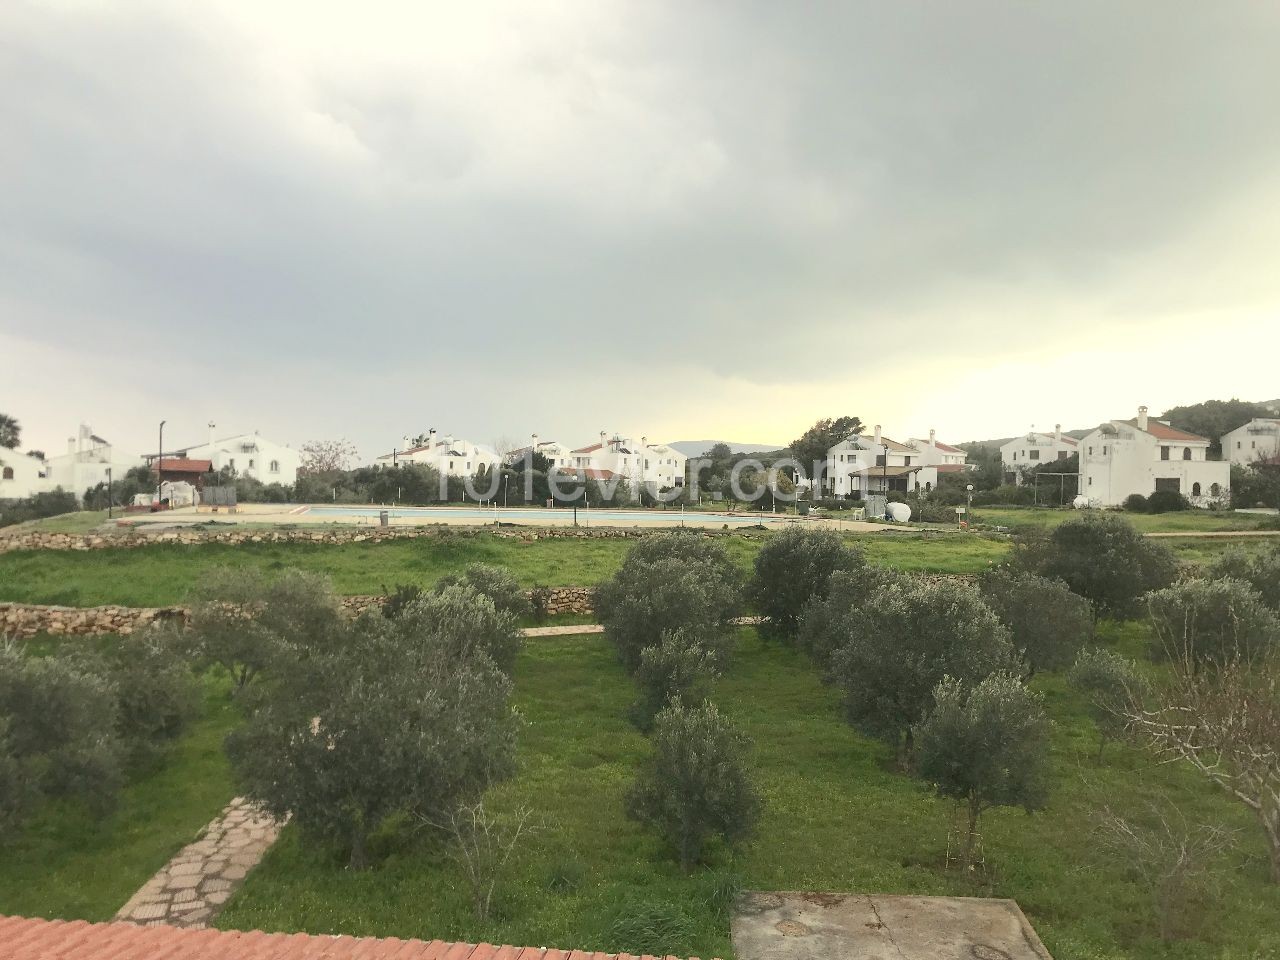 Freistehende villa in Kyrenia Sadrazamköy, mit Pool direkt am Meer. 3 Schlafzimmer, Garten mit Obstbäumen gefüllt,ohne MwSt. bereit. 05338403555 ** 